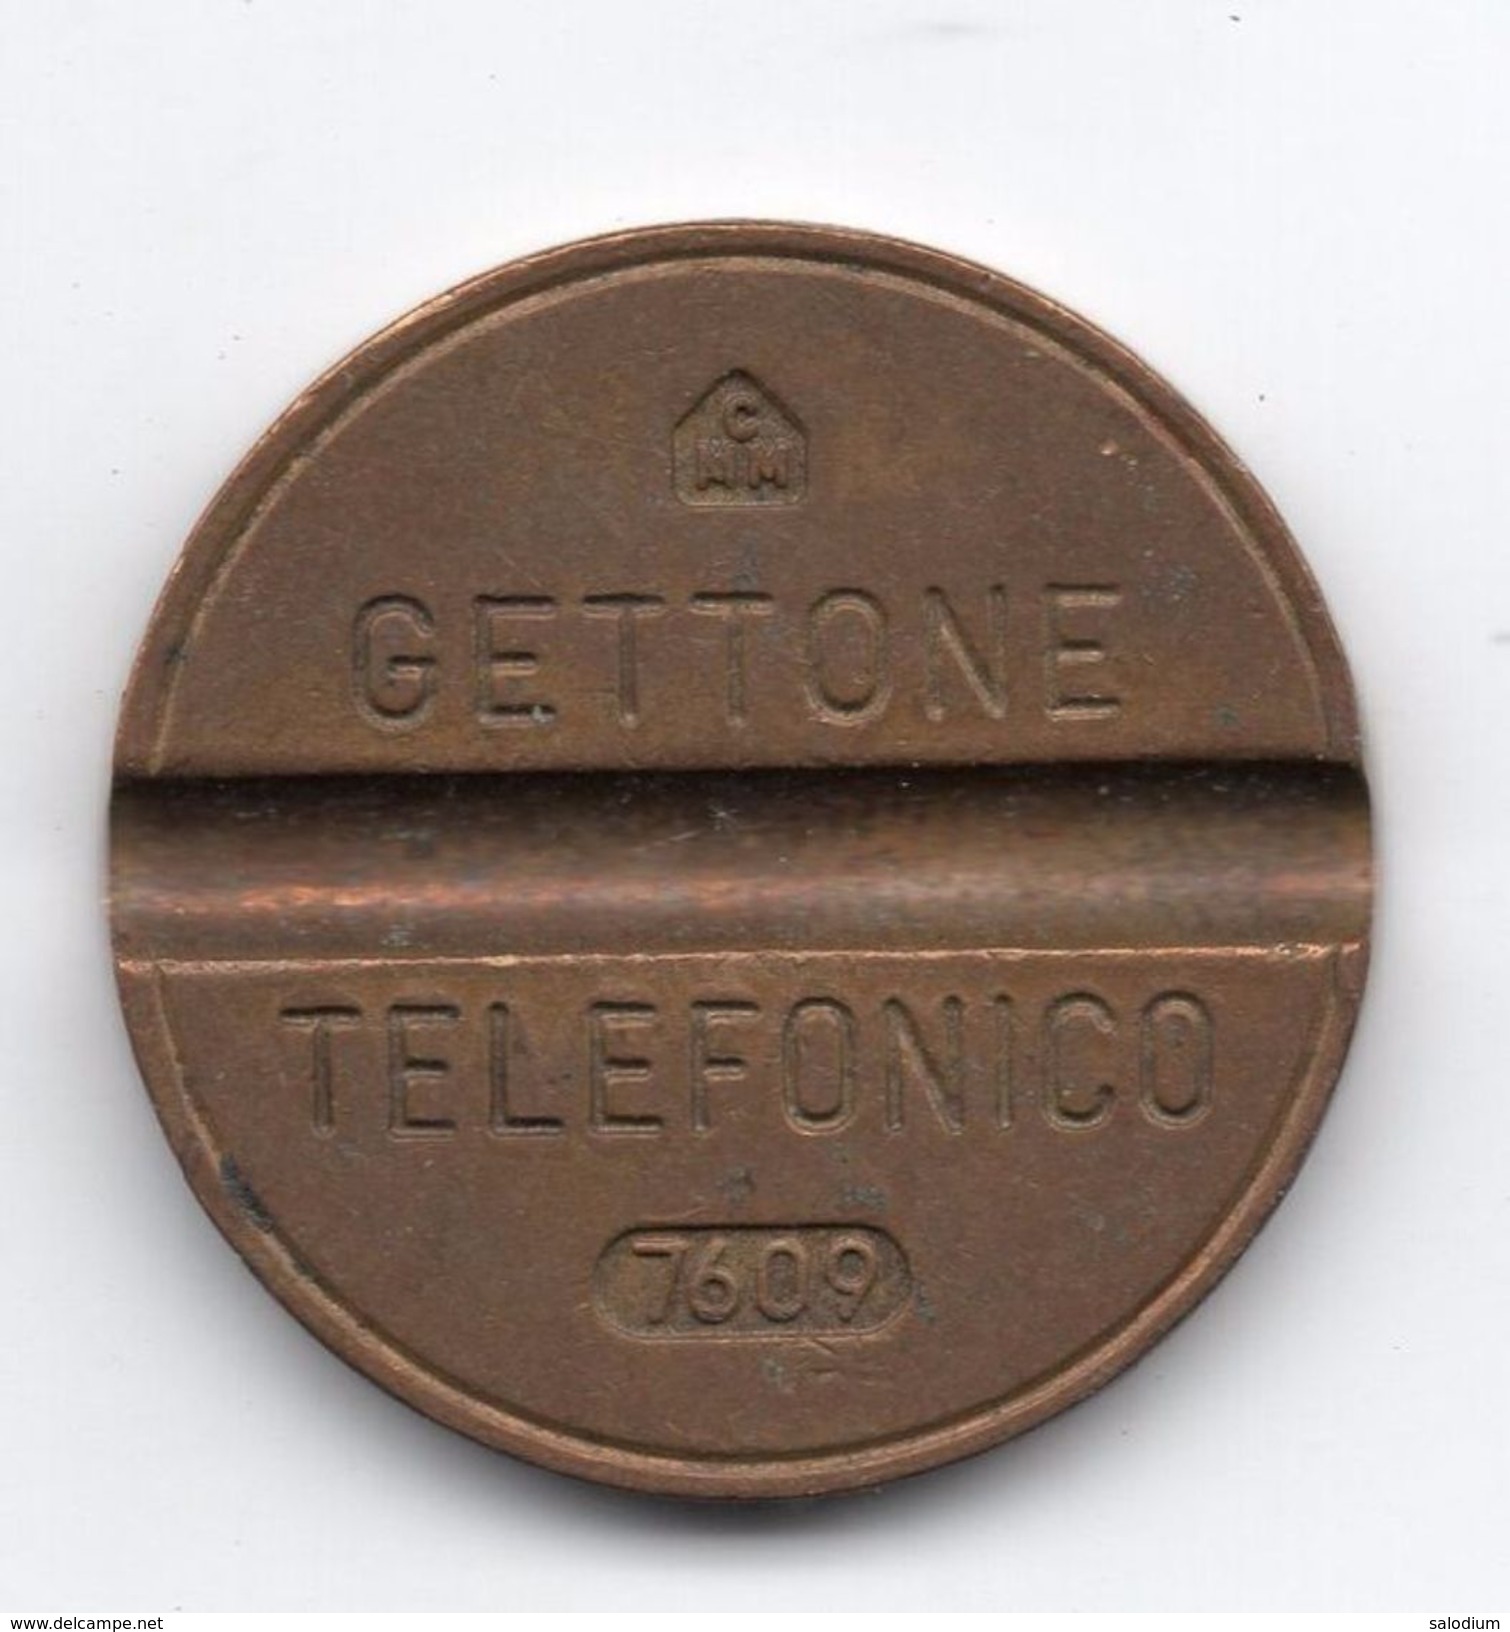 Gettone Telefonico 7609 Token Telephone - (Id-633) - Professionali/Di Società